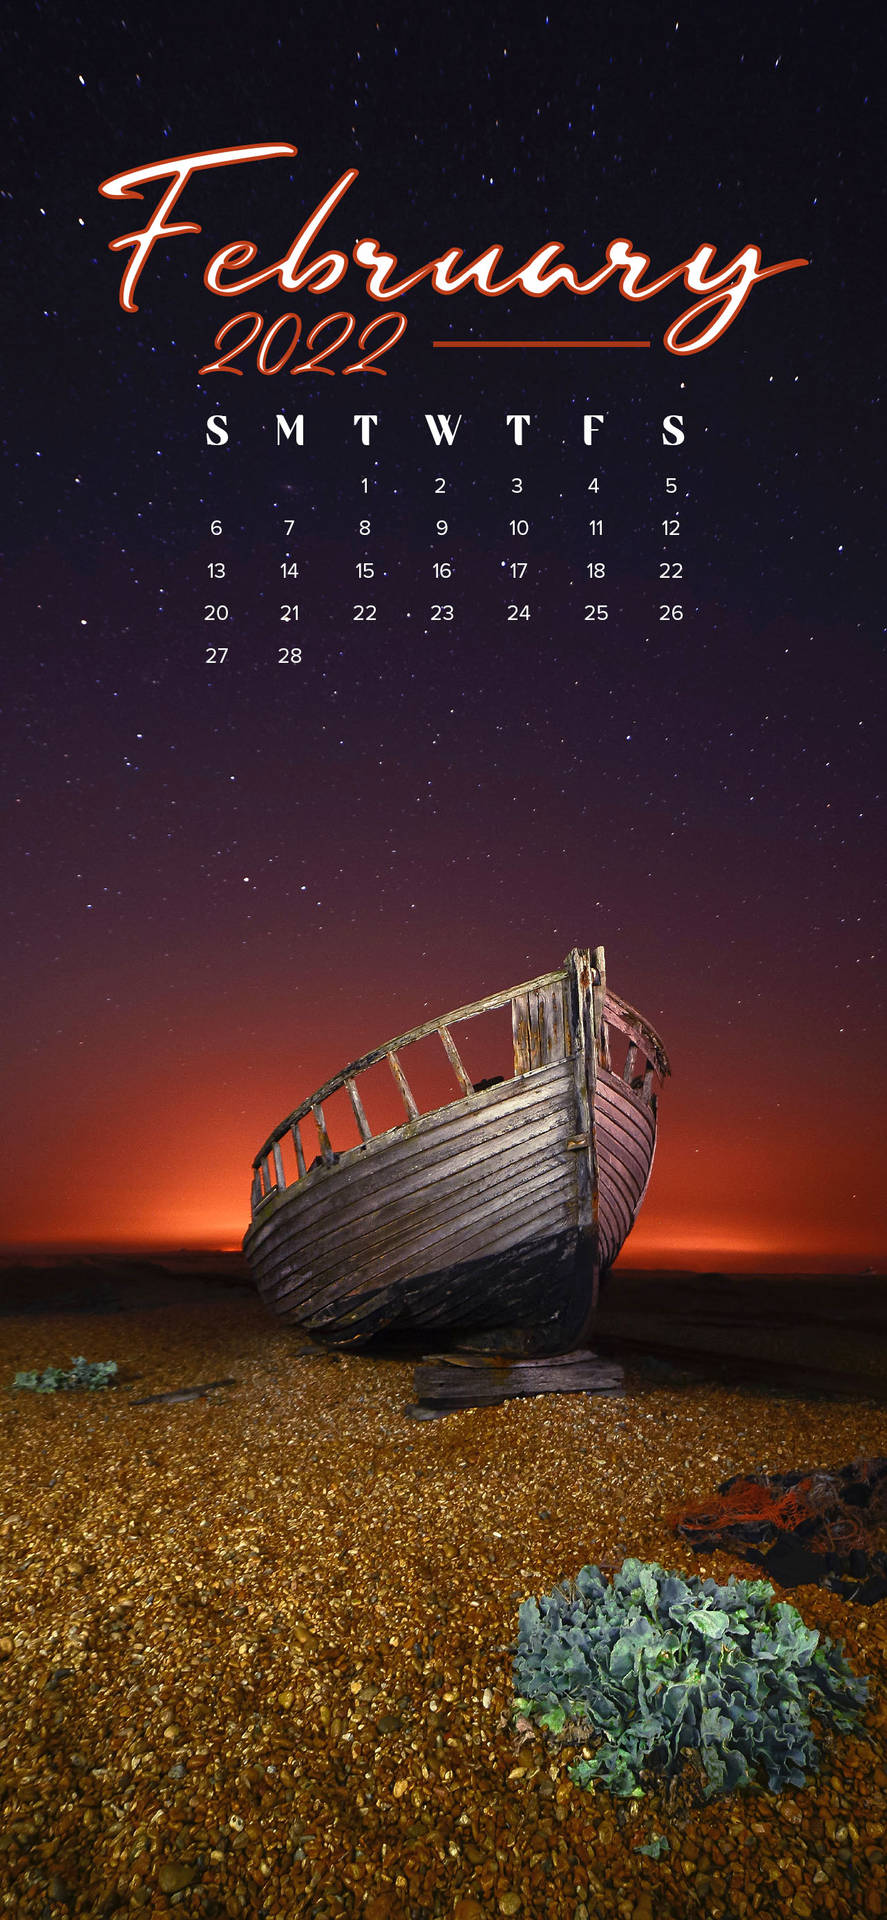 February 2022 Calendar In Beach Shore